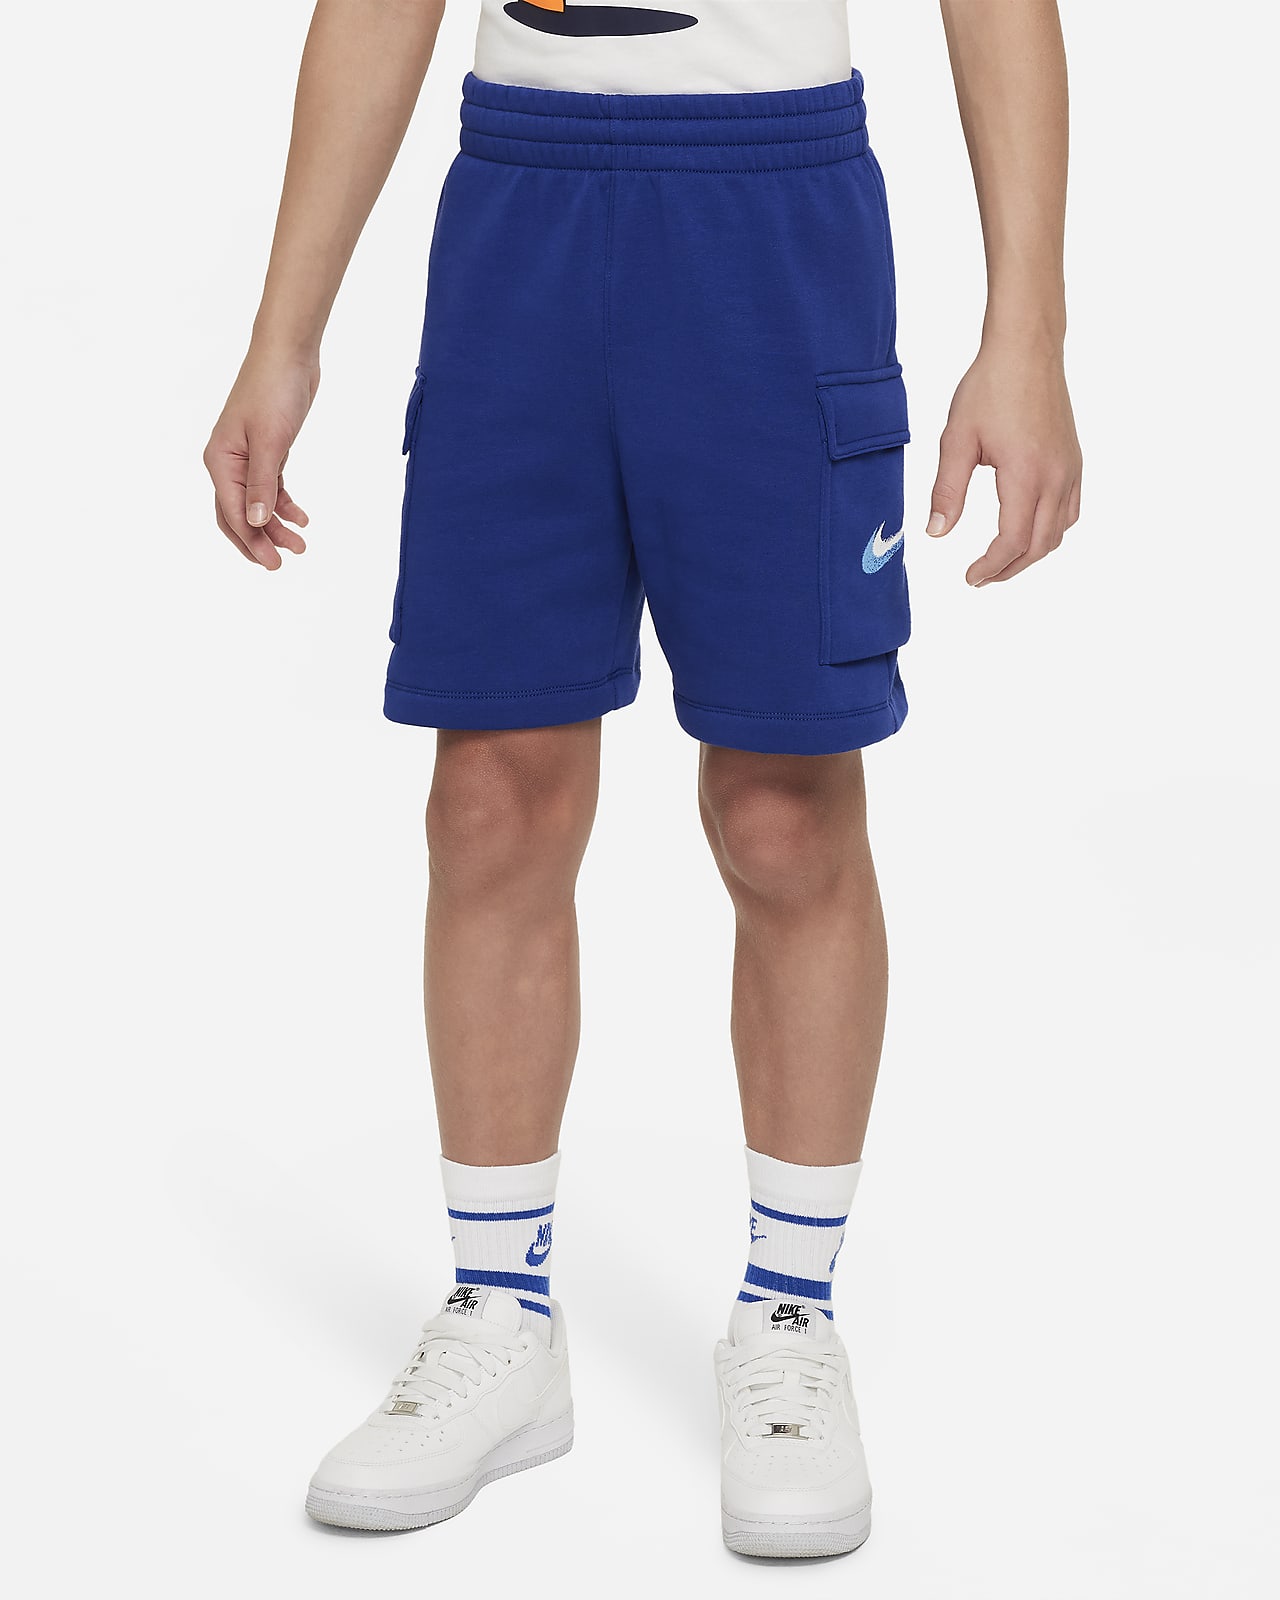 Nike Sportswear Standard Issue Big Kids' (Boys') Fleece Shorts